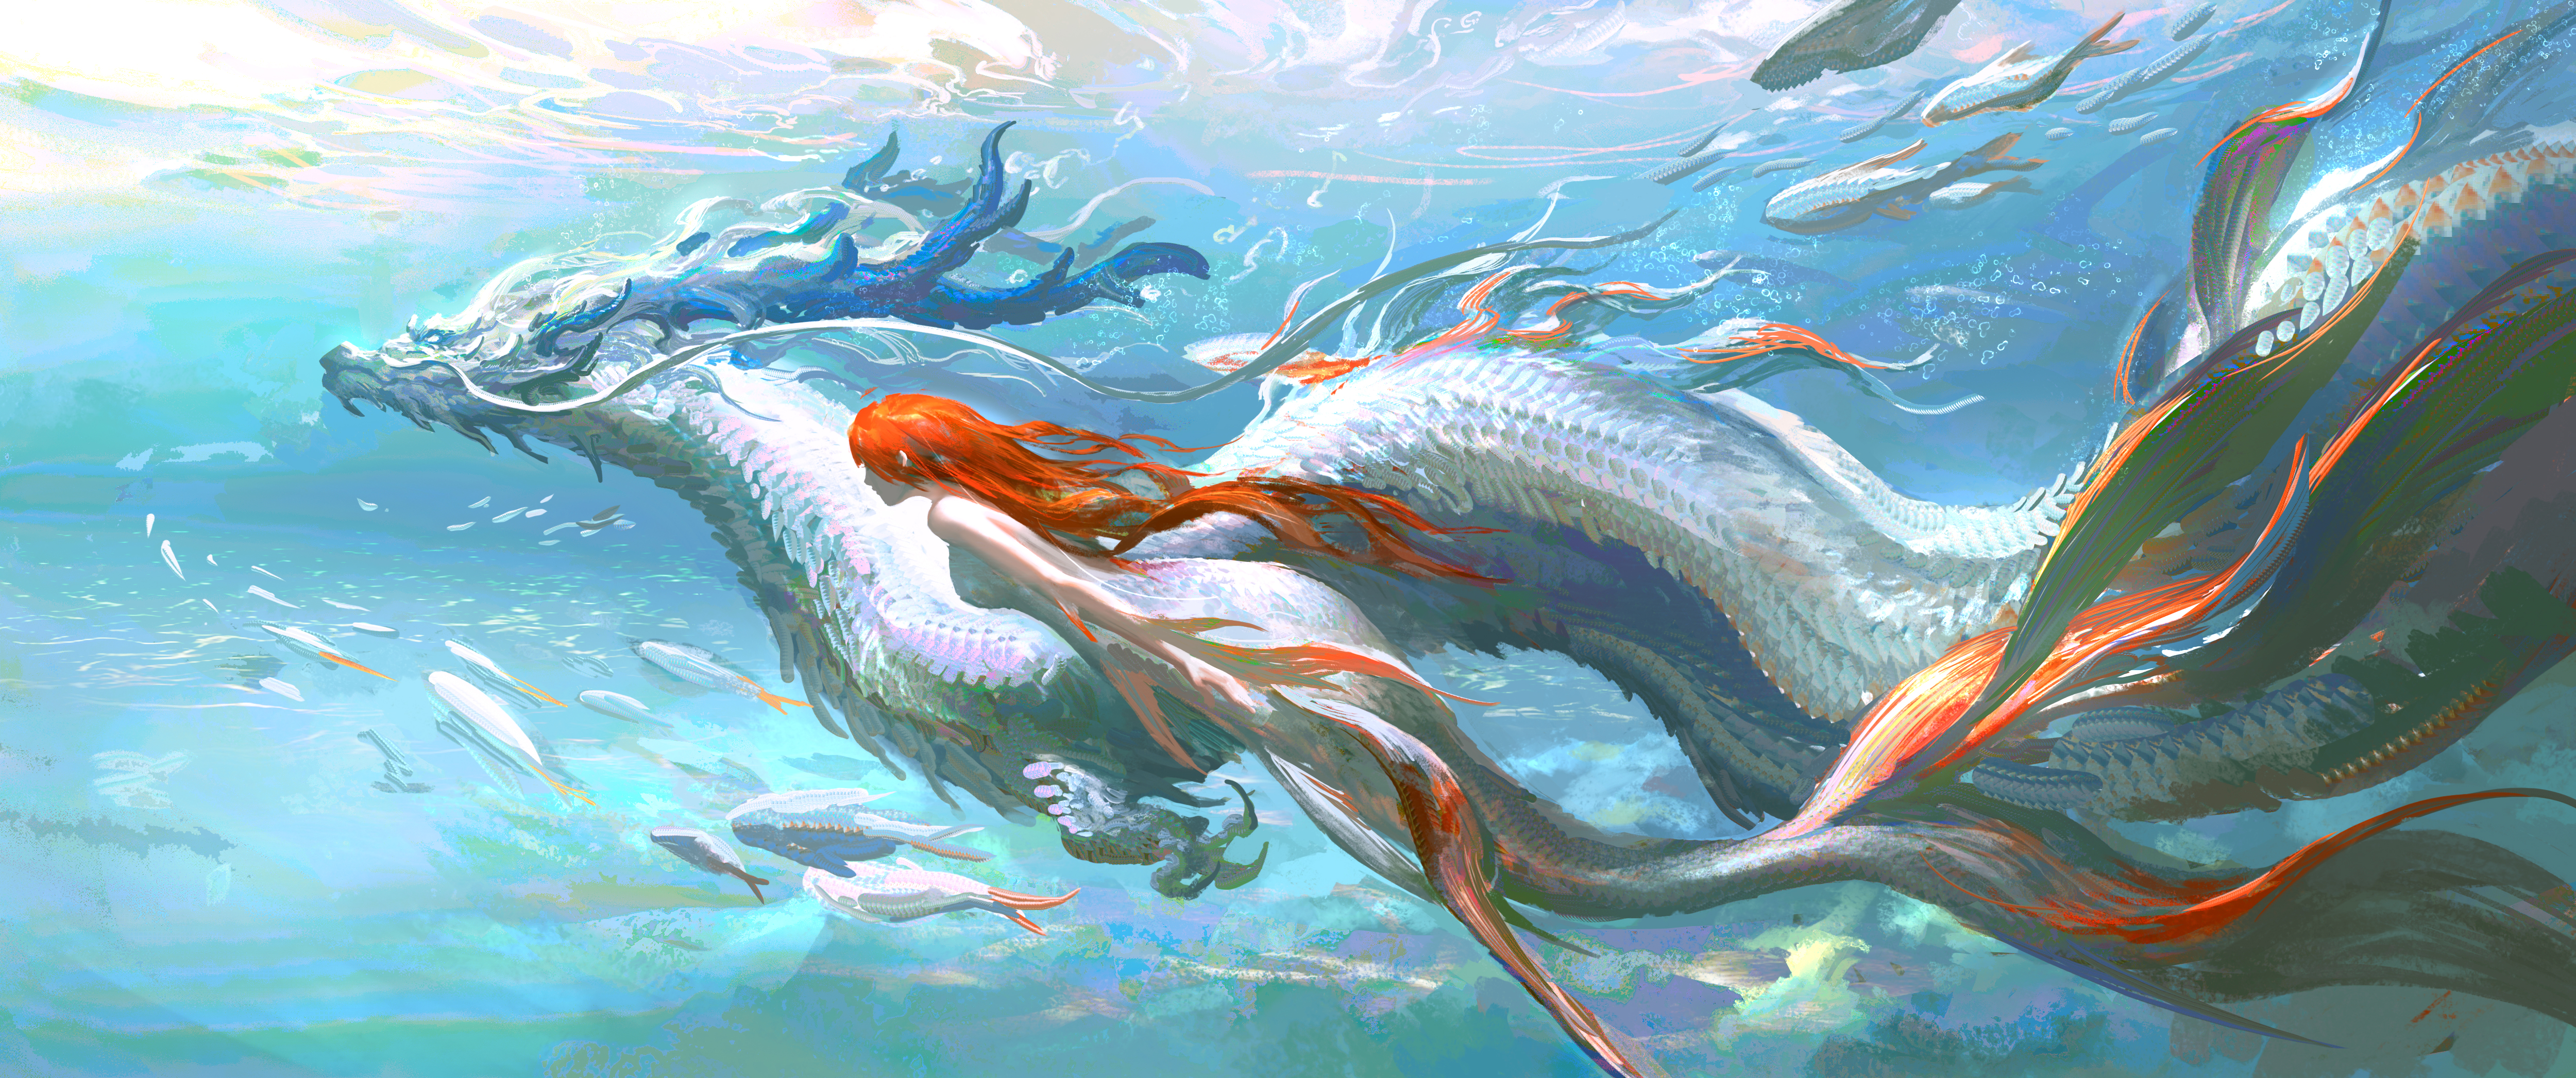 LEO Artist Underwater Long Hair Monster Girl Mermaids Creature Redhead Water Swimming Fish Chinese D 5000x2093